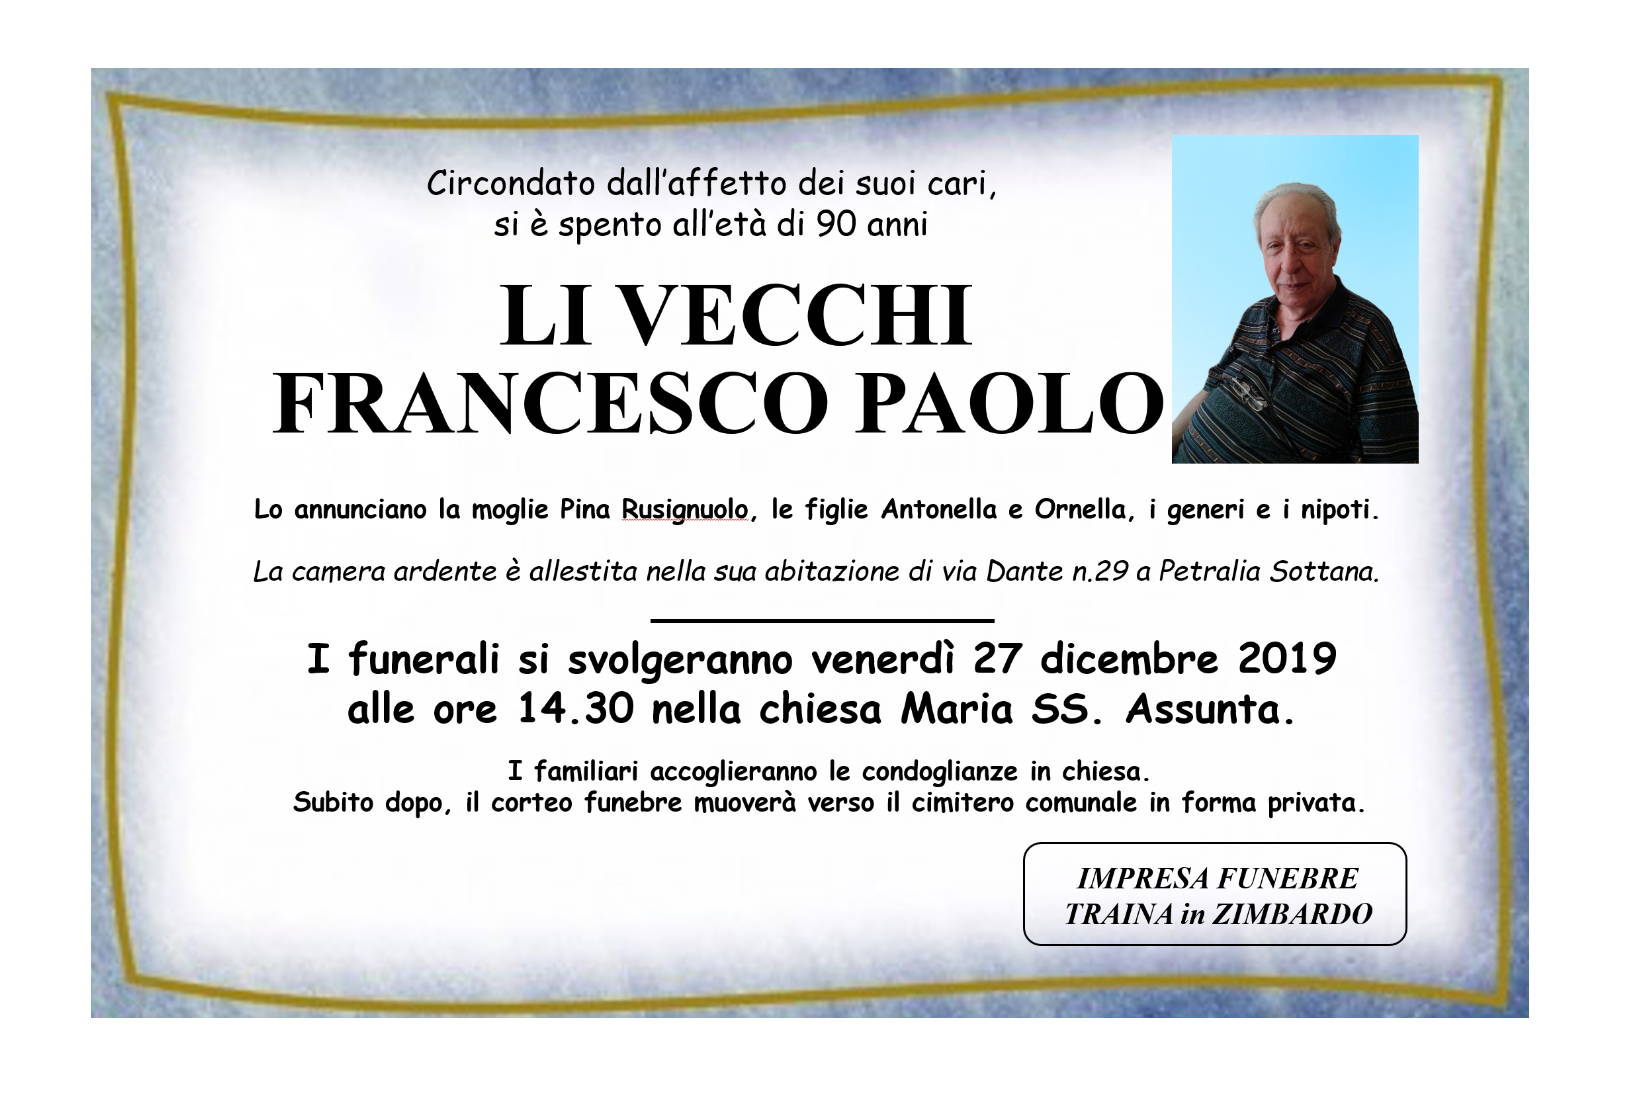 Francesco Paolo Li Vecchi